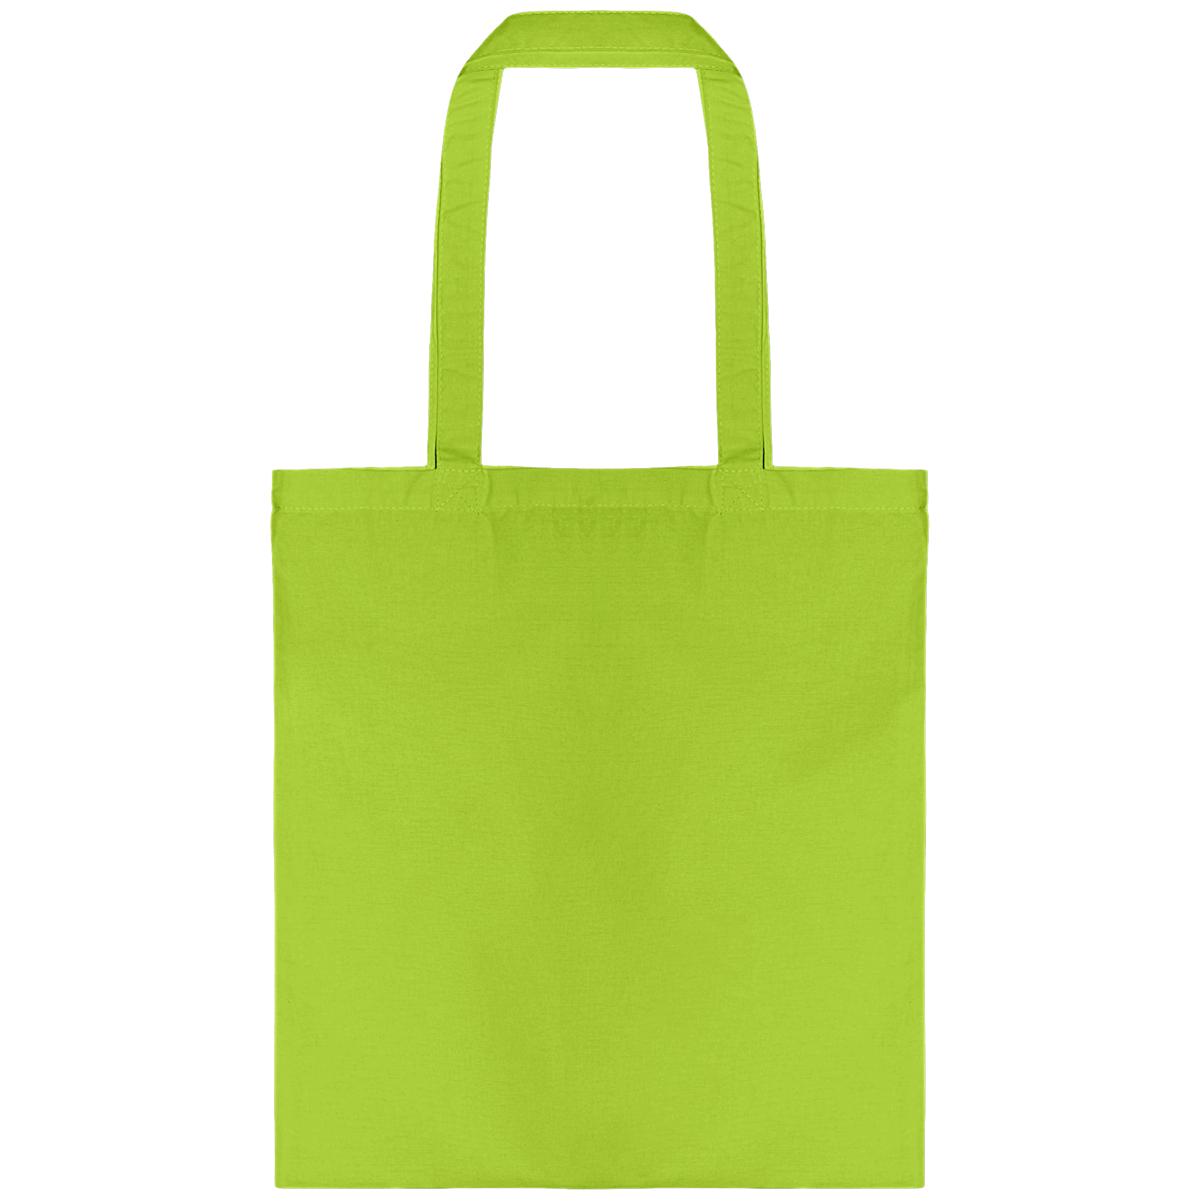 Personnalisez Votre Tote Bag Avec Tunetoo Burnt Lime